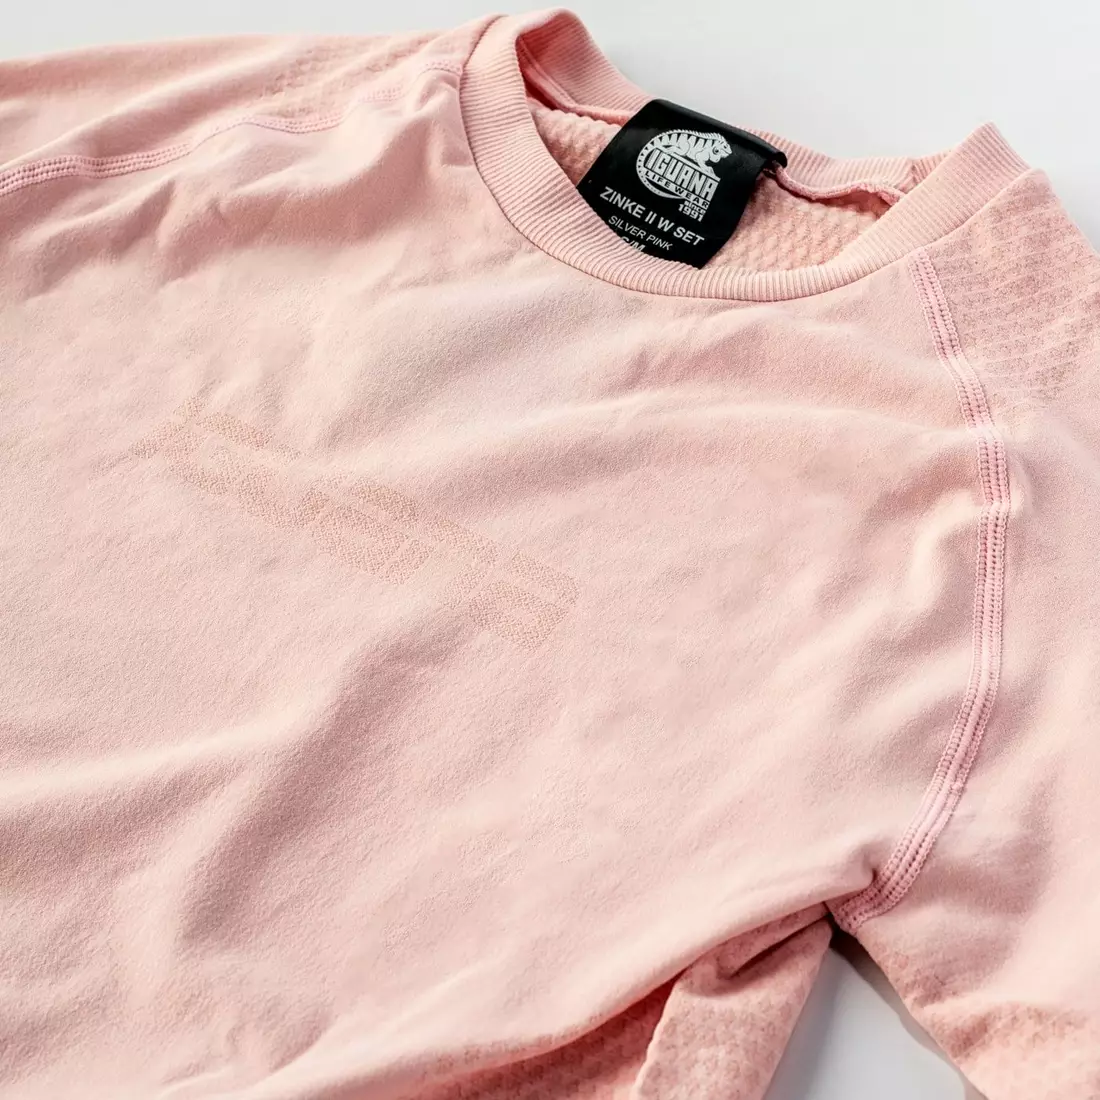 IGUANA, Női termoaktív fehérnemű: póló + nadrág LADY ZINKE II, rózsaszín